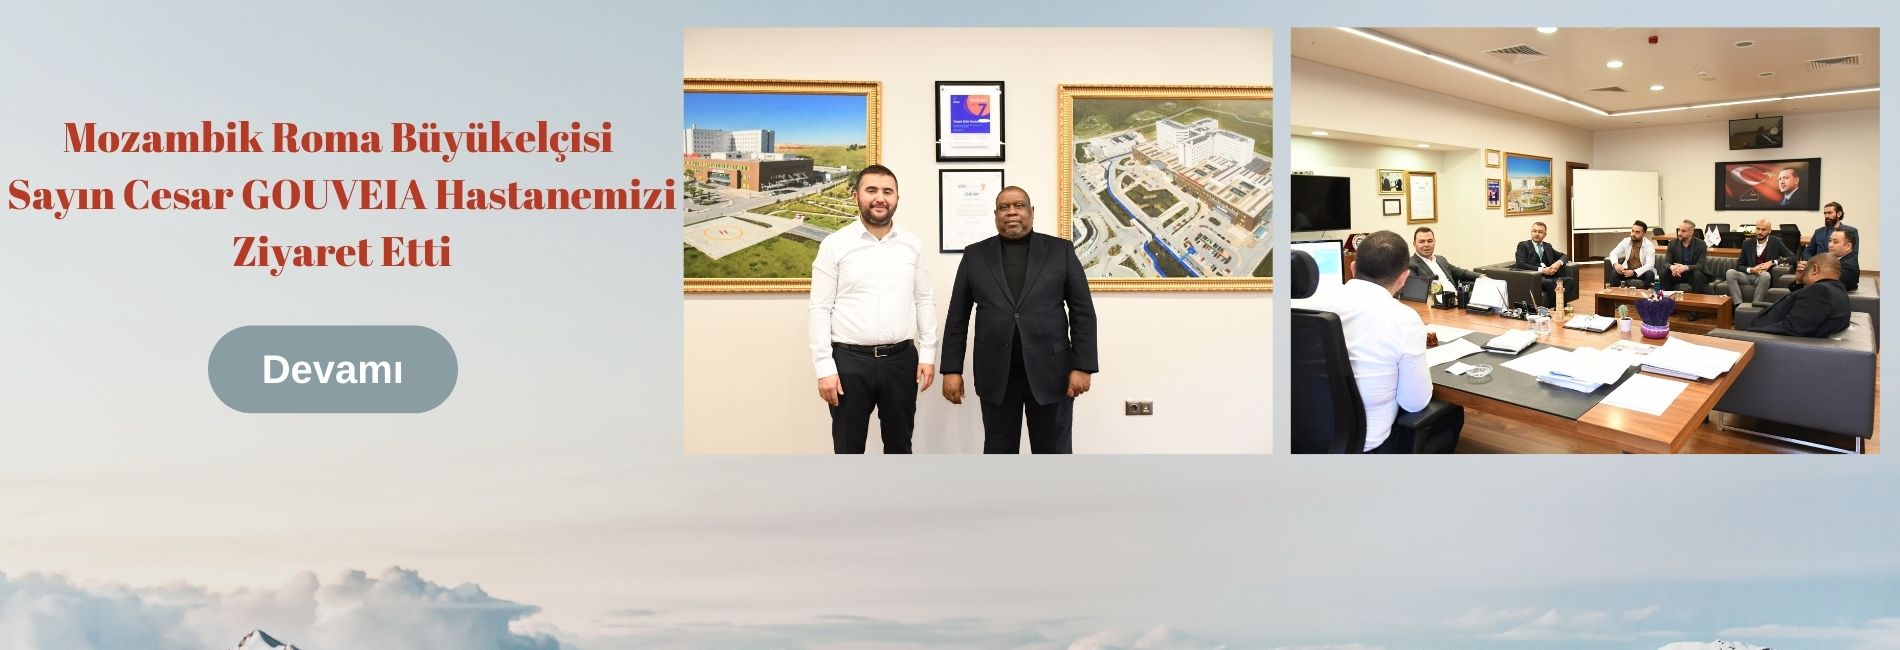 Mozambik Roma Büyükelçisi Sayın Cesar GOUVEIA Hastanemizi Ziyaret Etti